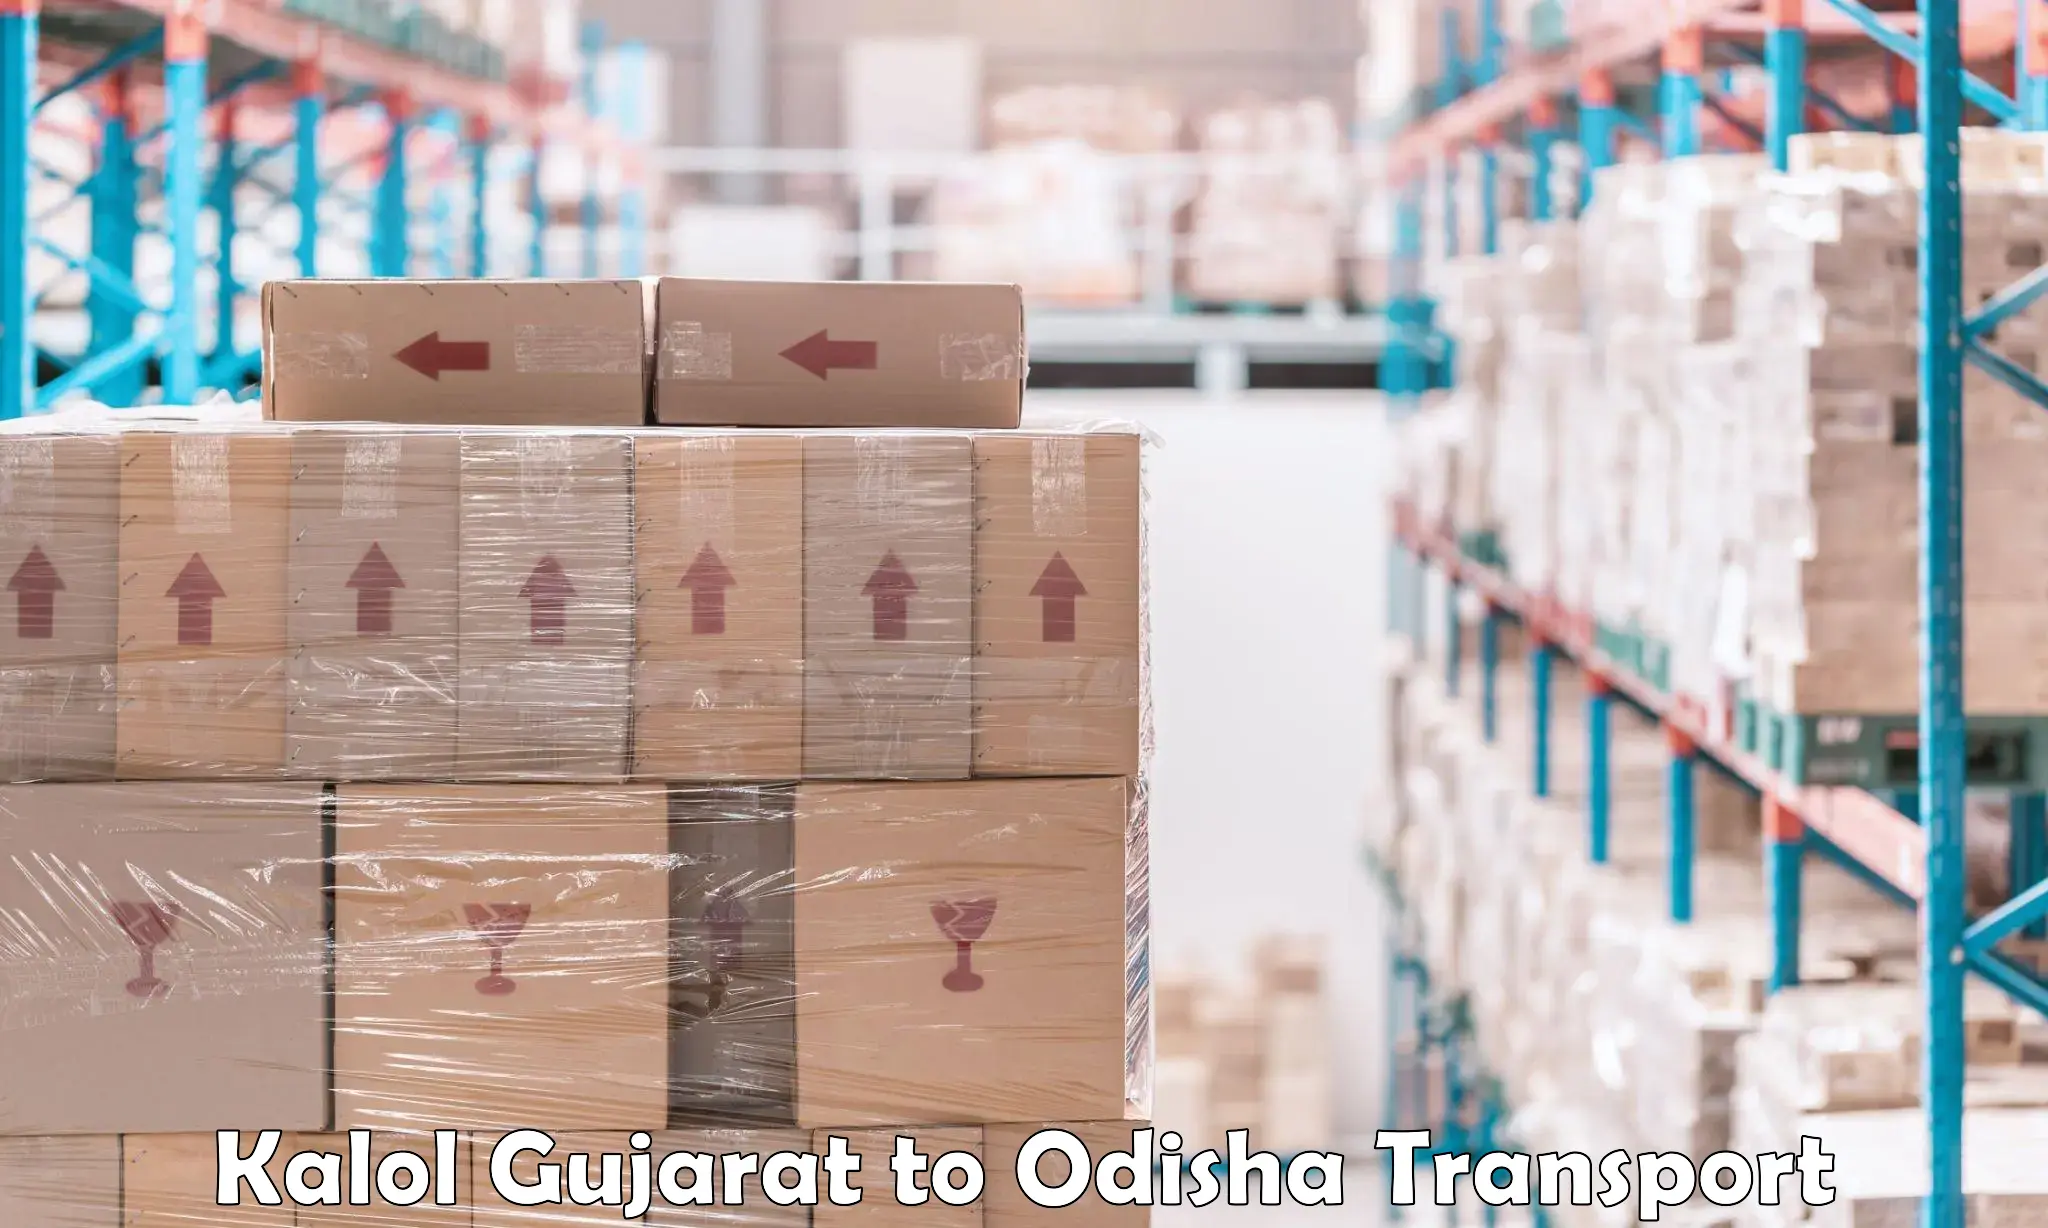 Container transport service Kalol Gujarat to Paralakhemundi